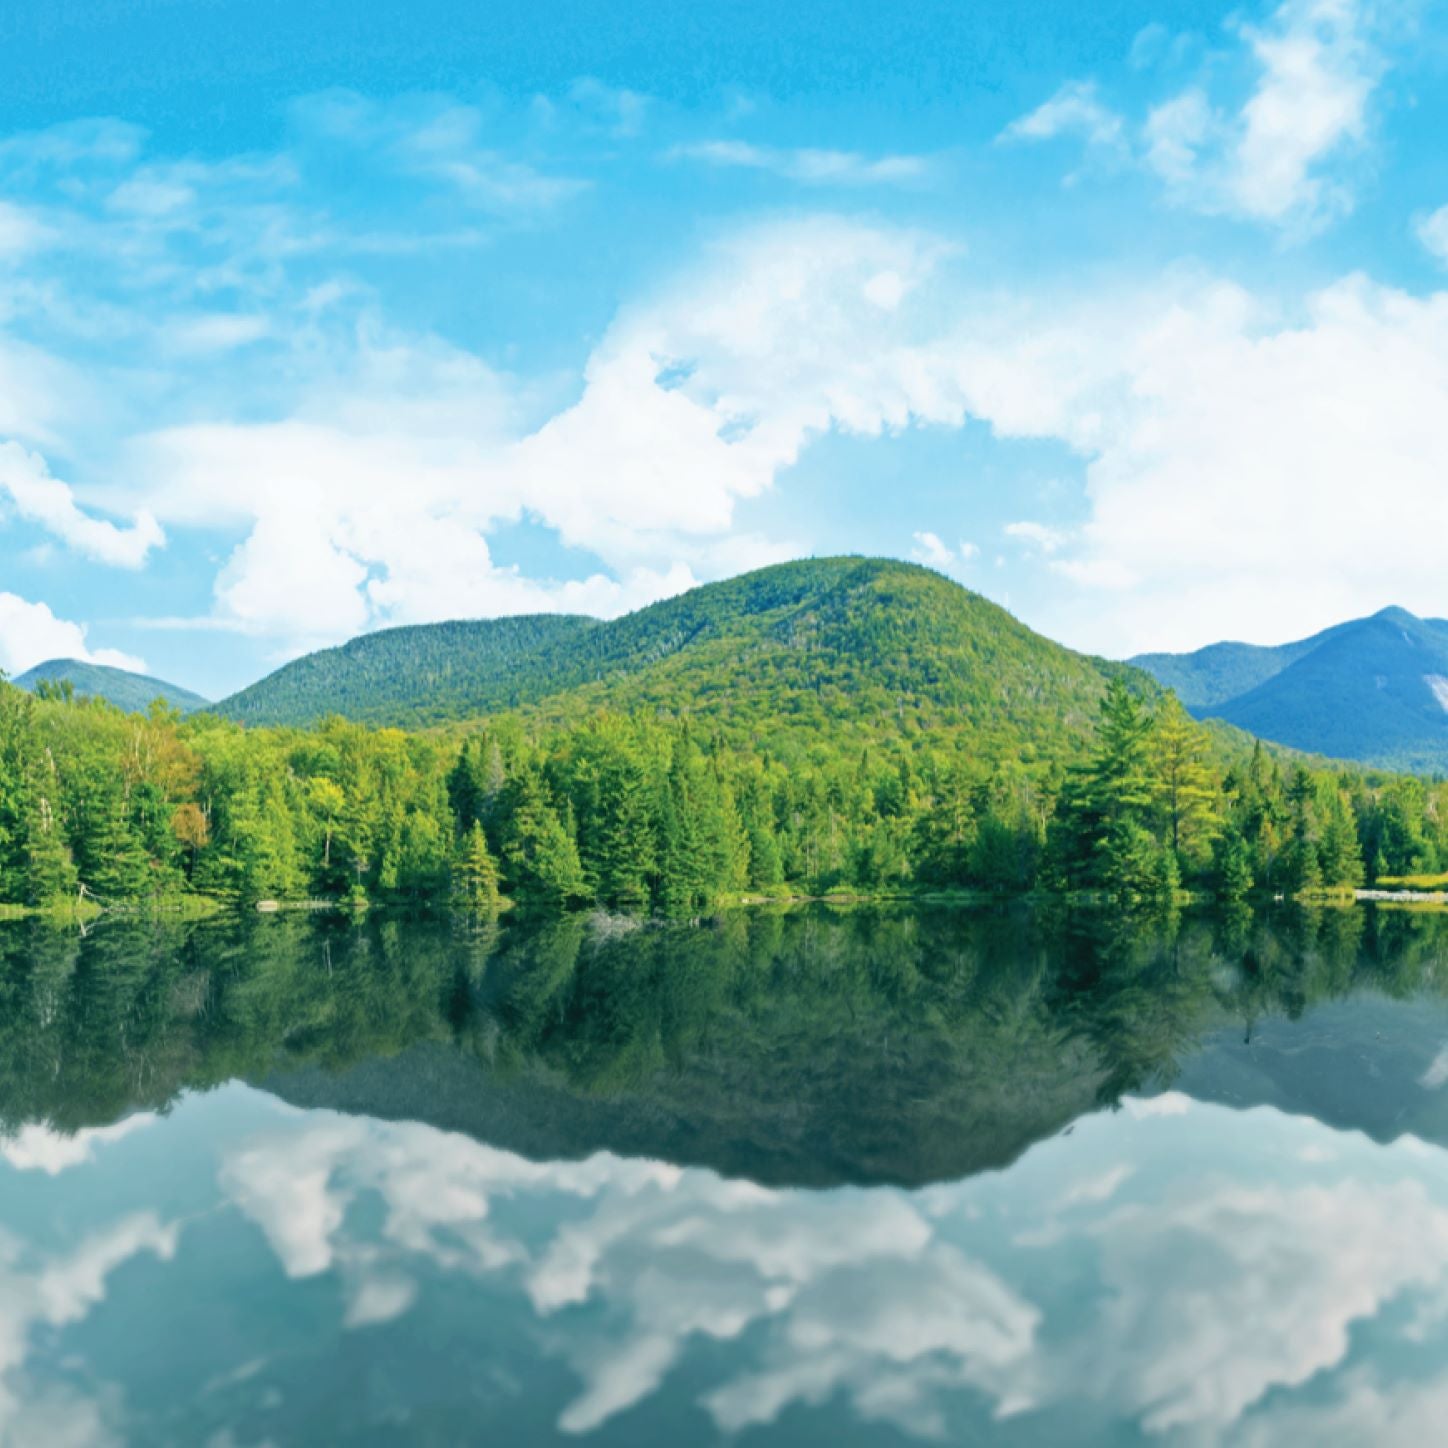 Landscape image of the Adirondack Mountains